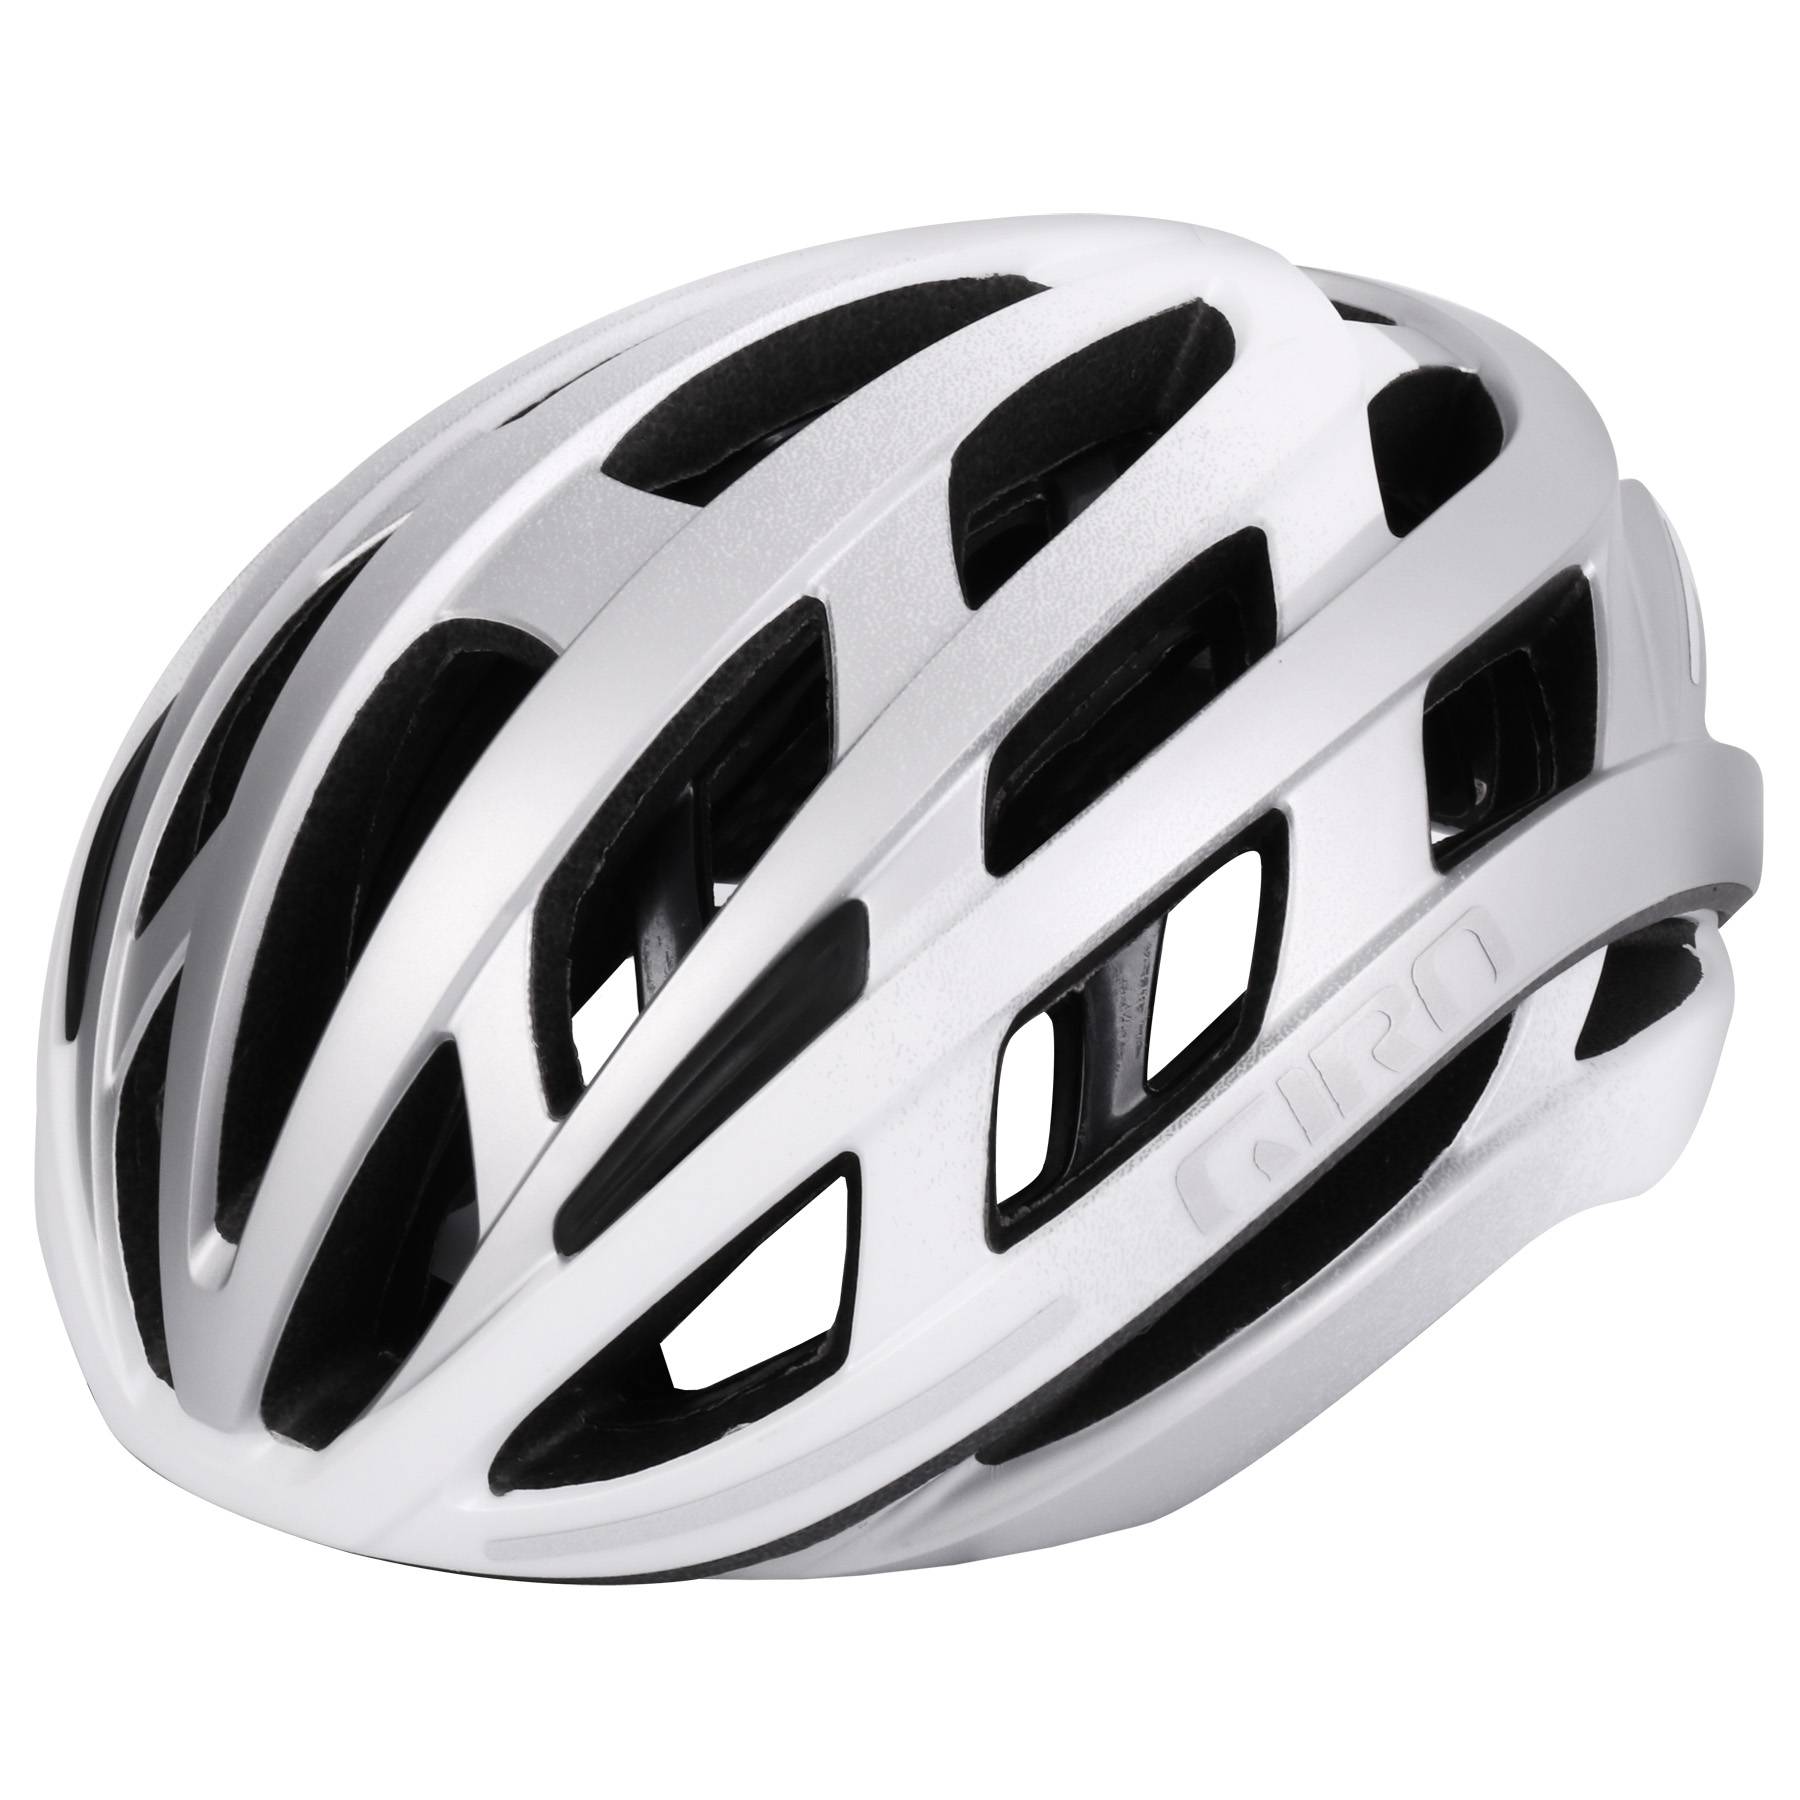 Bild von Giro Helios Spherical MIPS Helm - matte white / silver fade